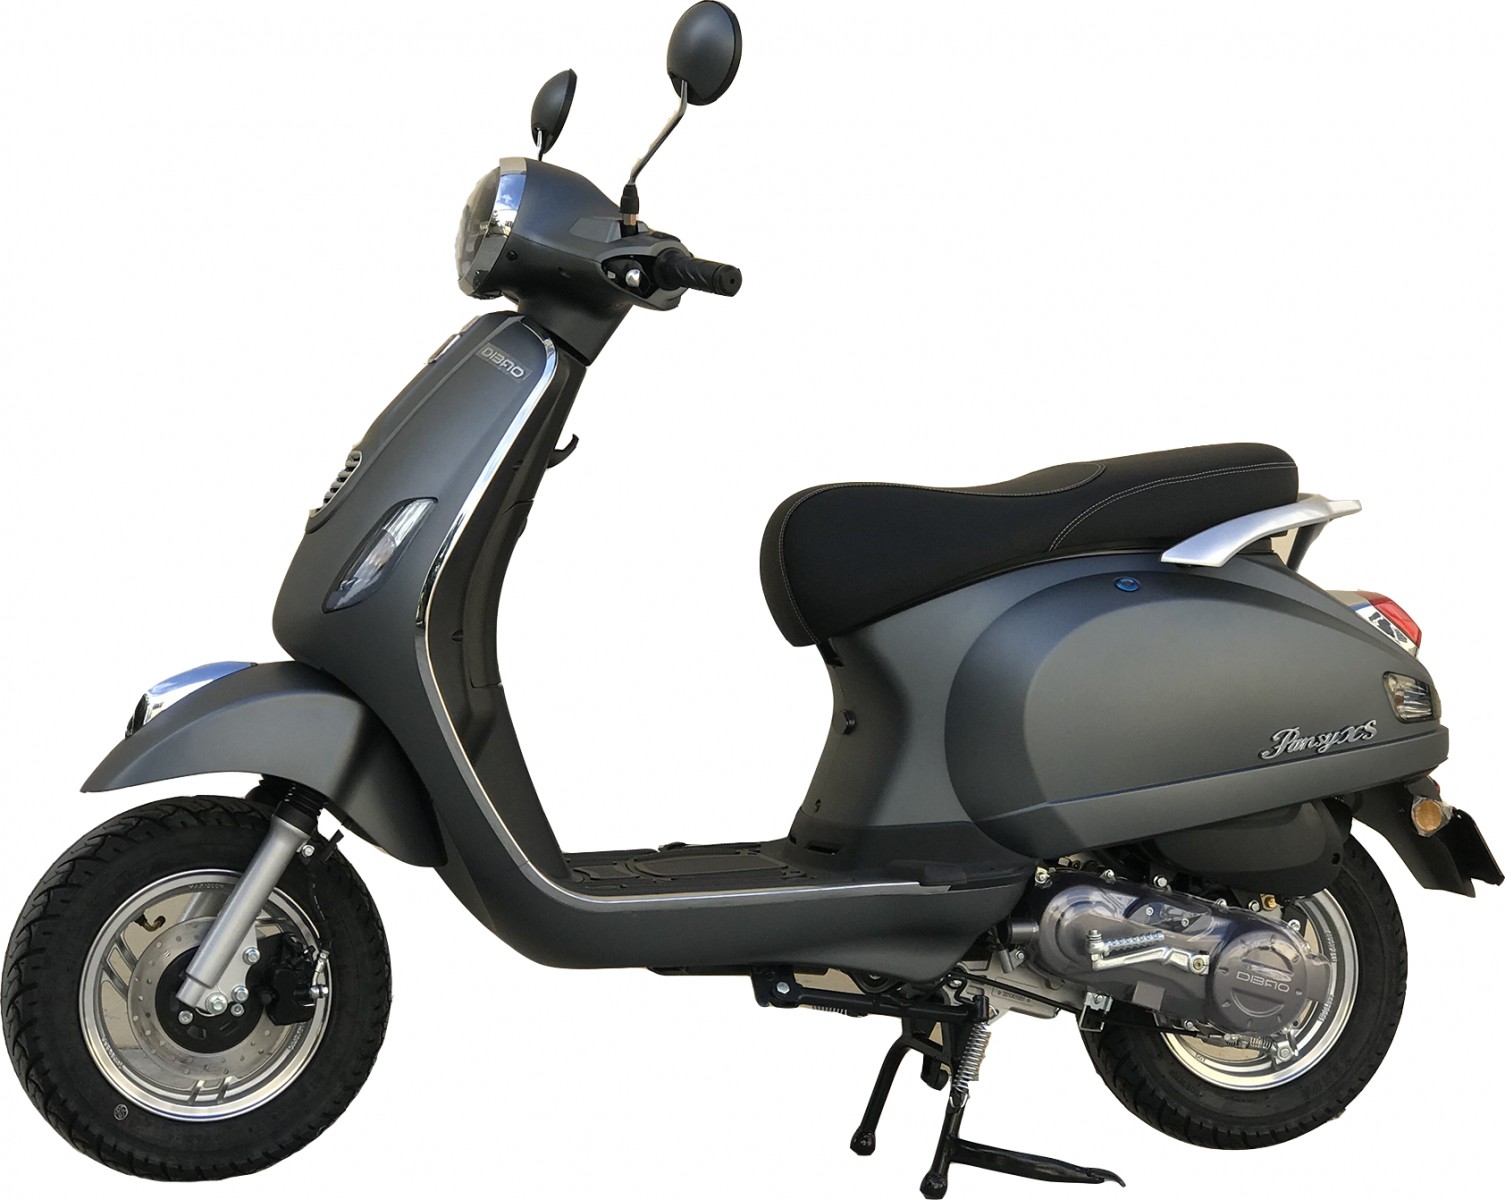 Xe máy 50cc Vespa Dibao Pansy XS phù hợp với nhu cầu của người trẻ